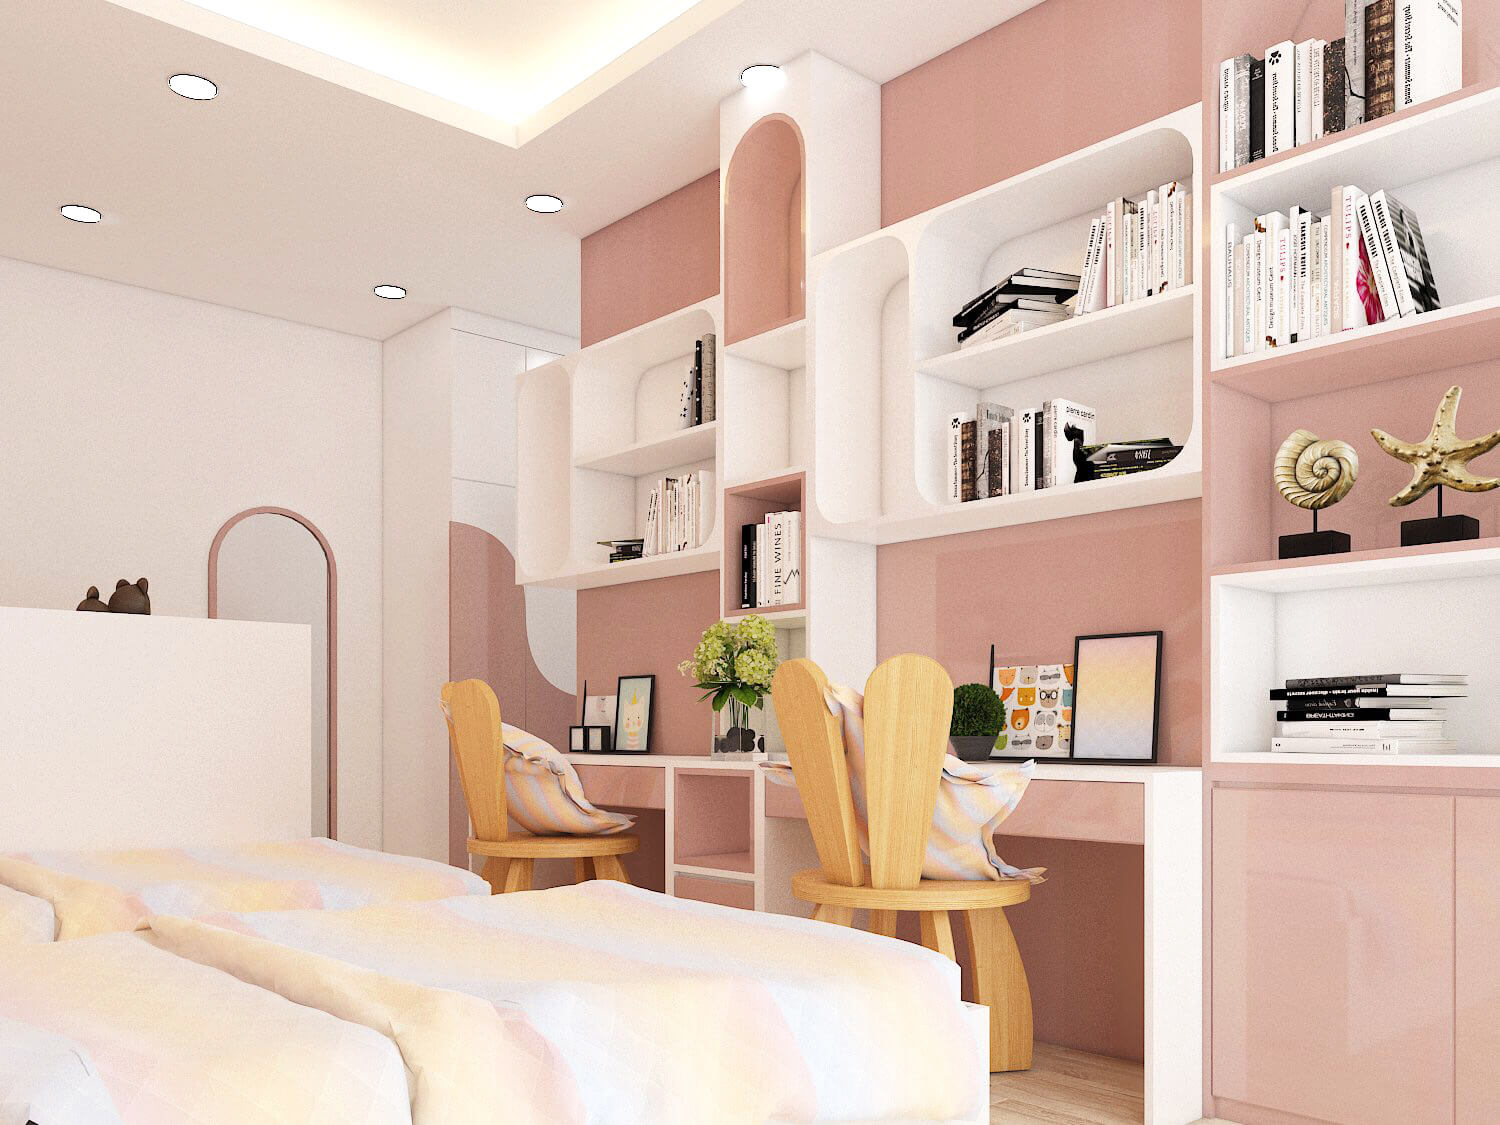 Phòng ngủ, phong cách Hiện đại Modern, thiết kế concept nội thất, nhà phố Gò Vấp